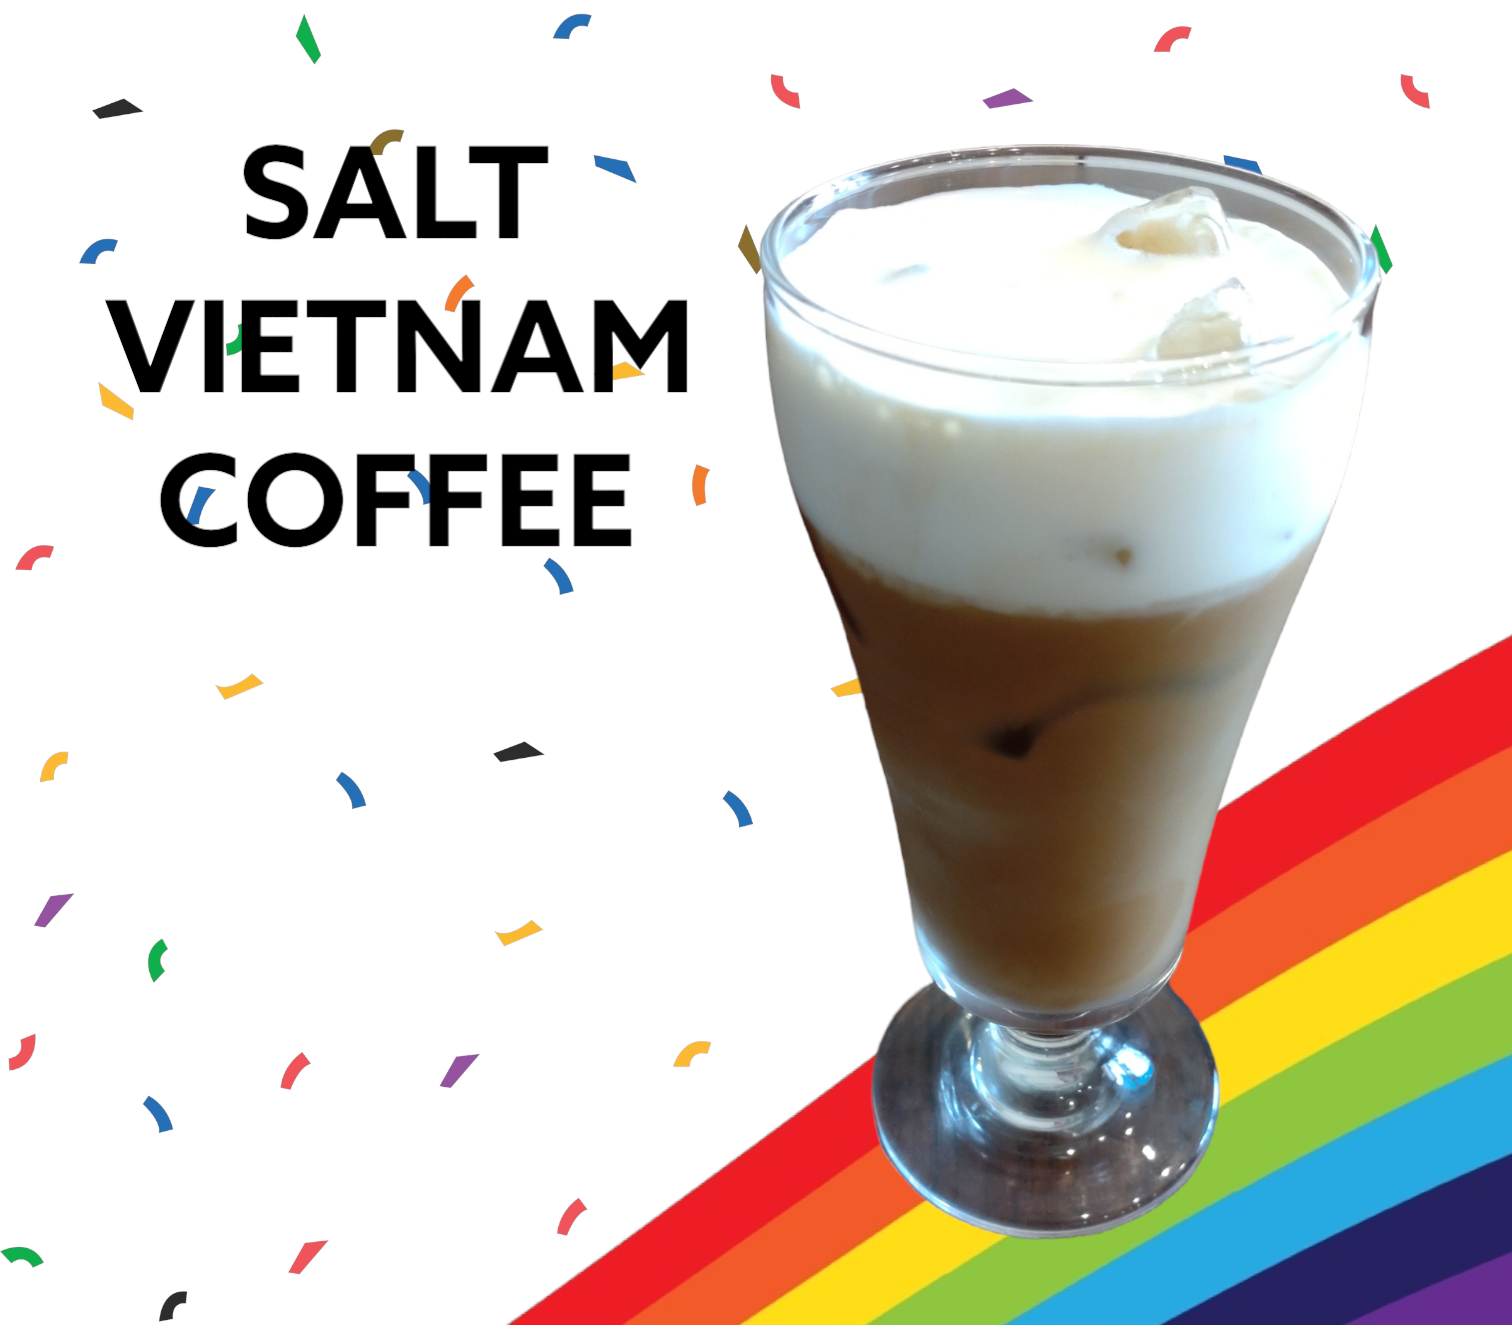 SALT VIETNAM COFFEE